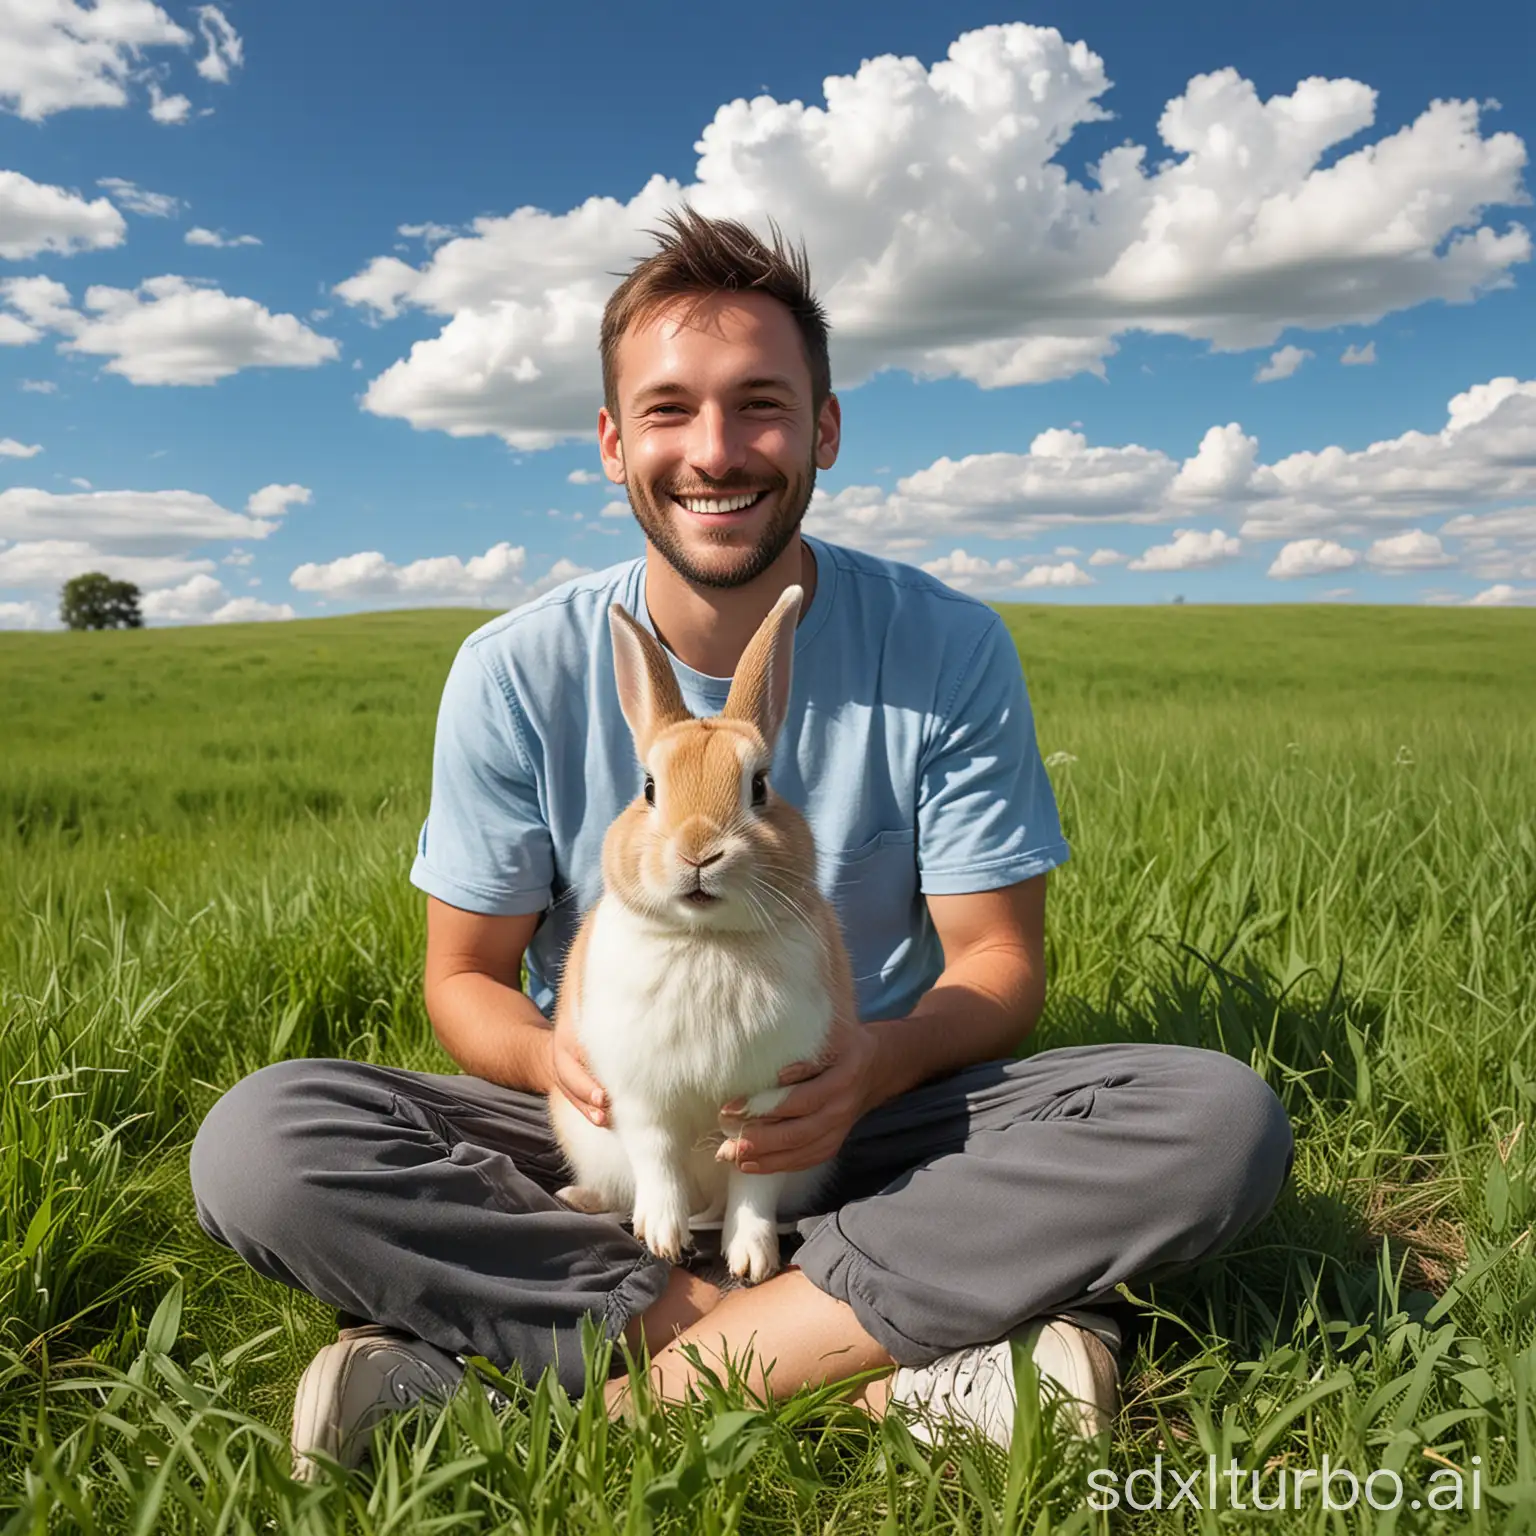 Foto hochauflösend. Ein niedlicher Hase der einen menschlichen,lächelnden Männerkopf hat und auf einer Wiese im Gras sitzt. Der Himmel ist blau mit kleinen Wolken.